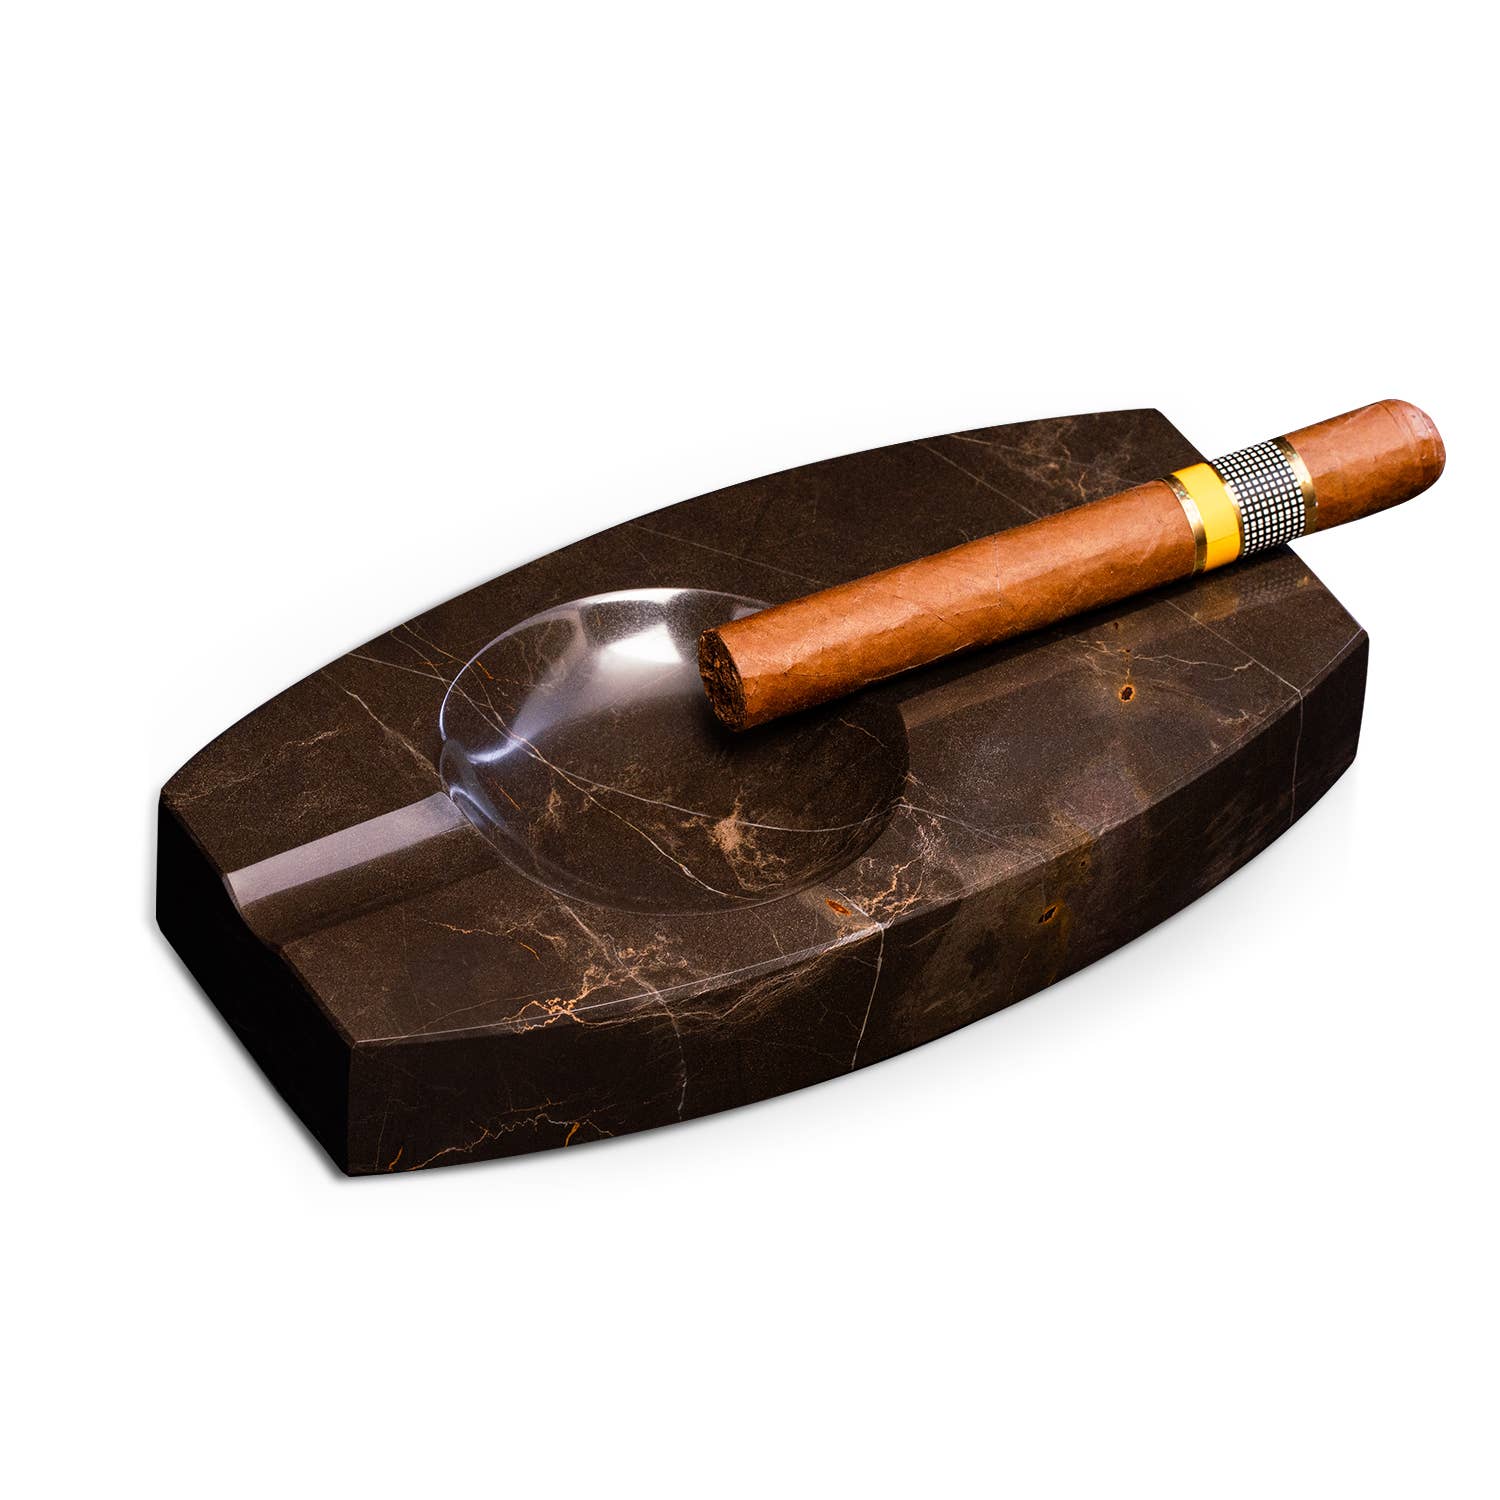 Aluminum Cigar Tube, Bey Berk Cigar Case